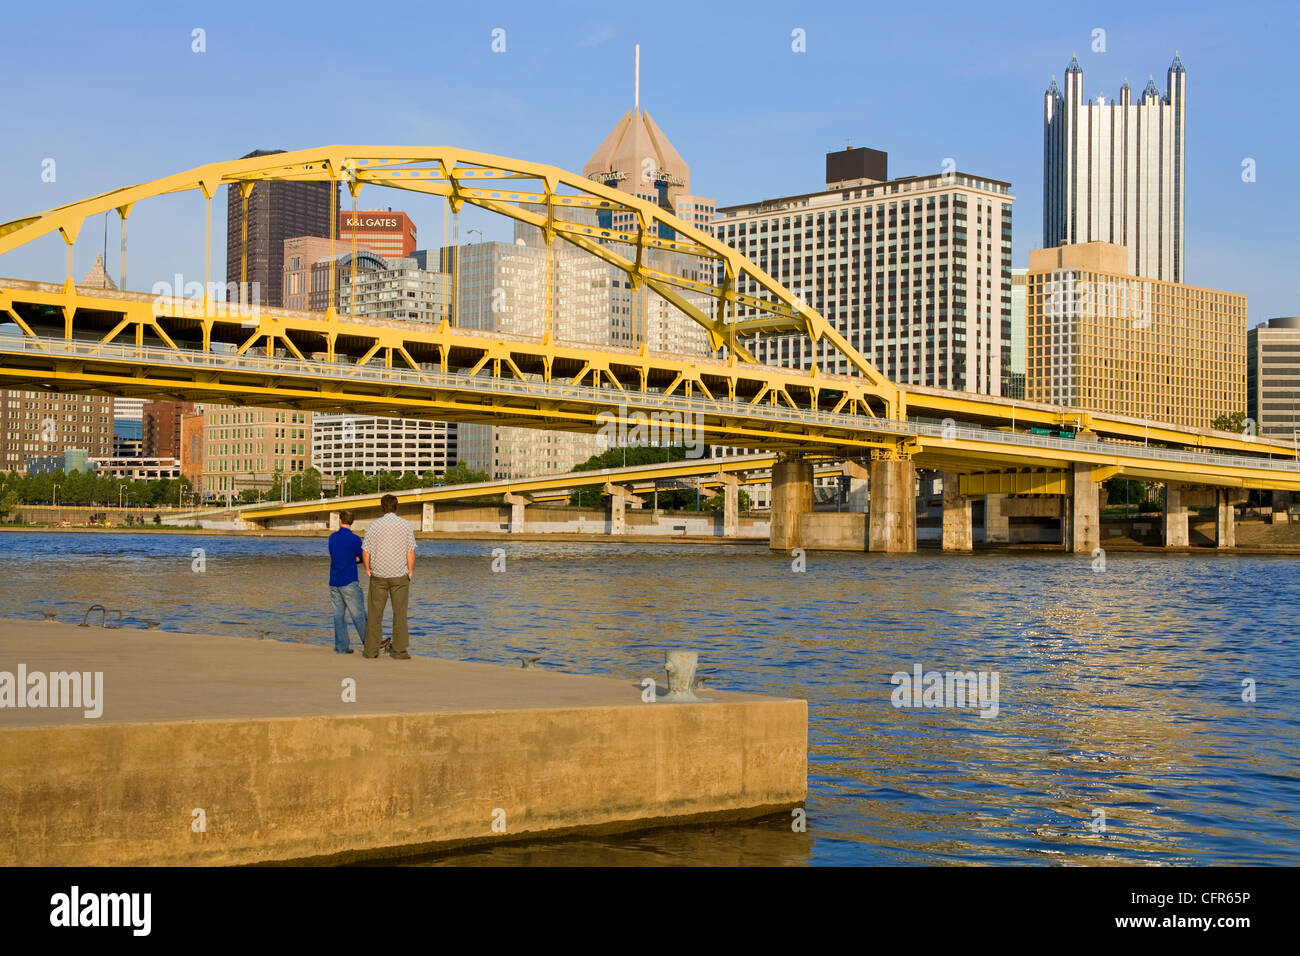 Le fort Duquesne Pont sur la rivière Allegheny, Pittsburgh, Pennsylvanie, États-Unis d'Amérique, Amérique du Nord Banque D'Images